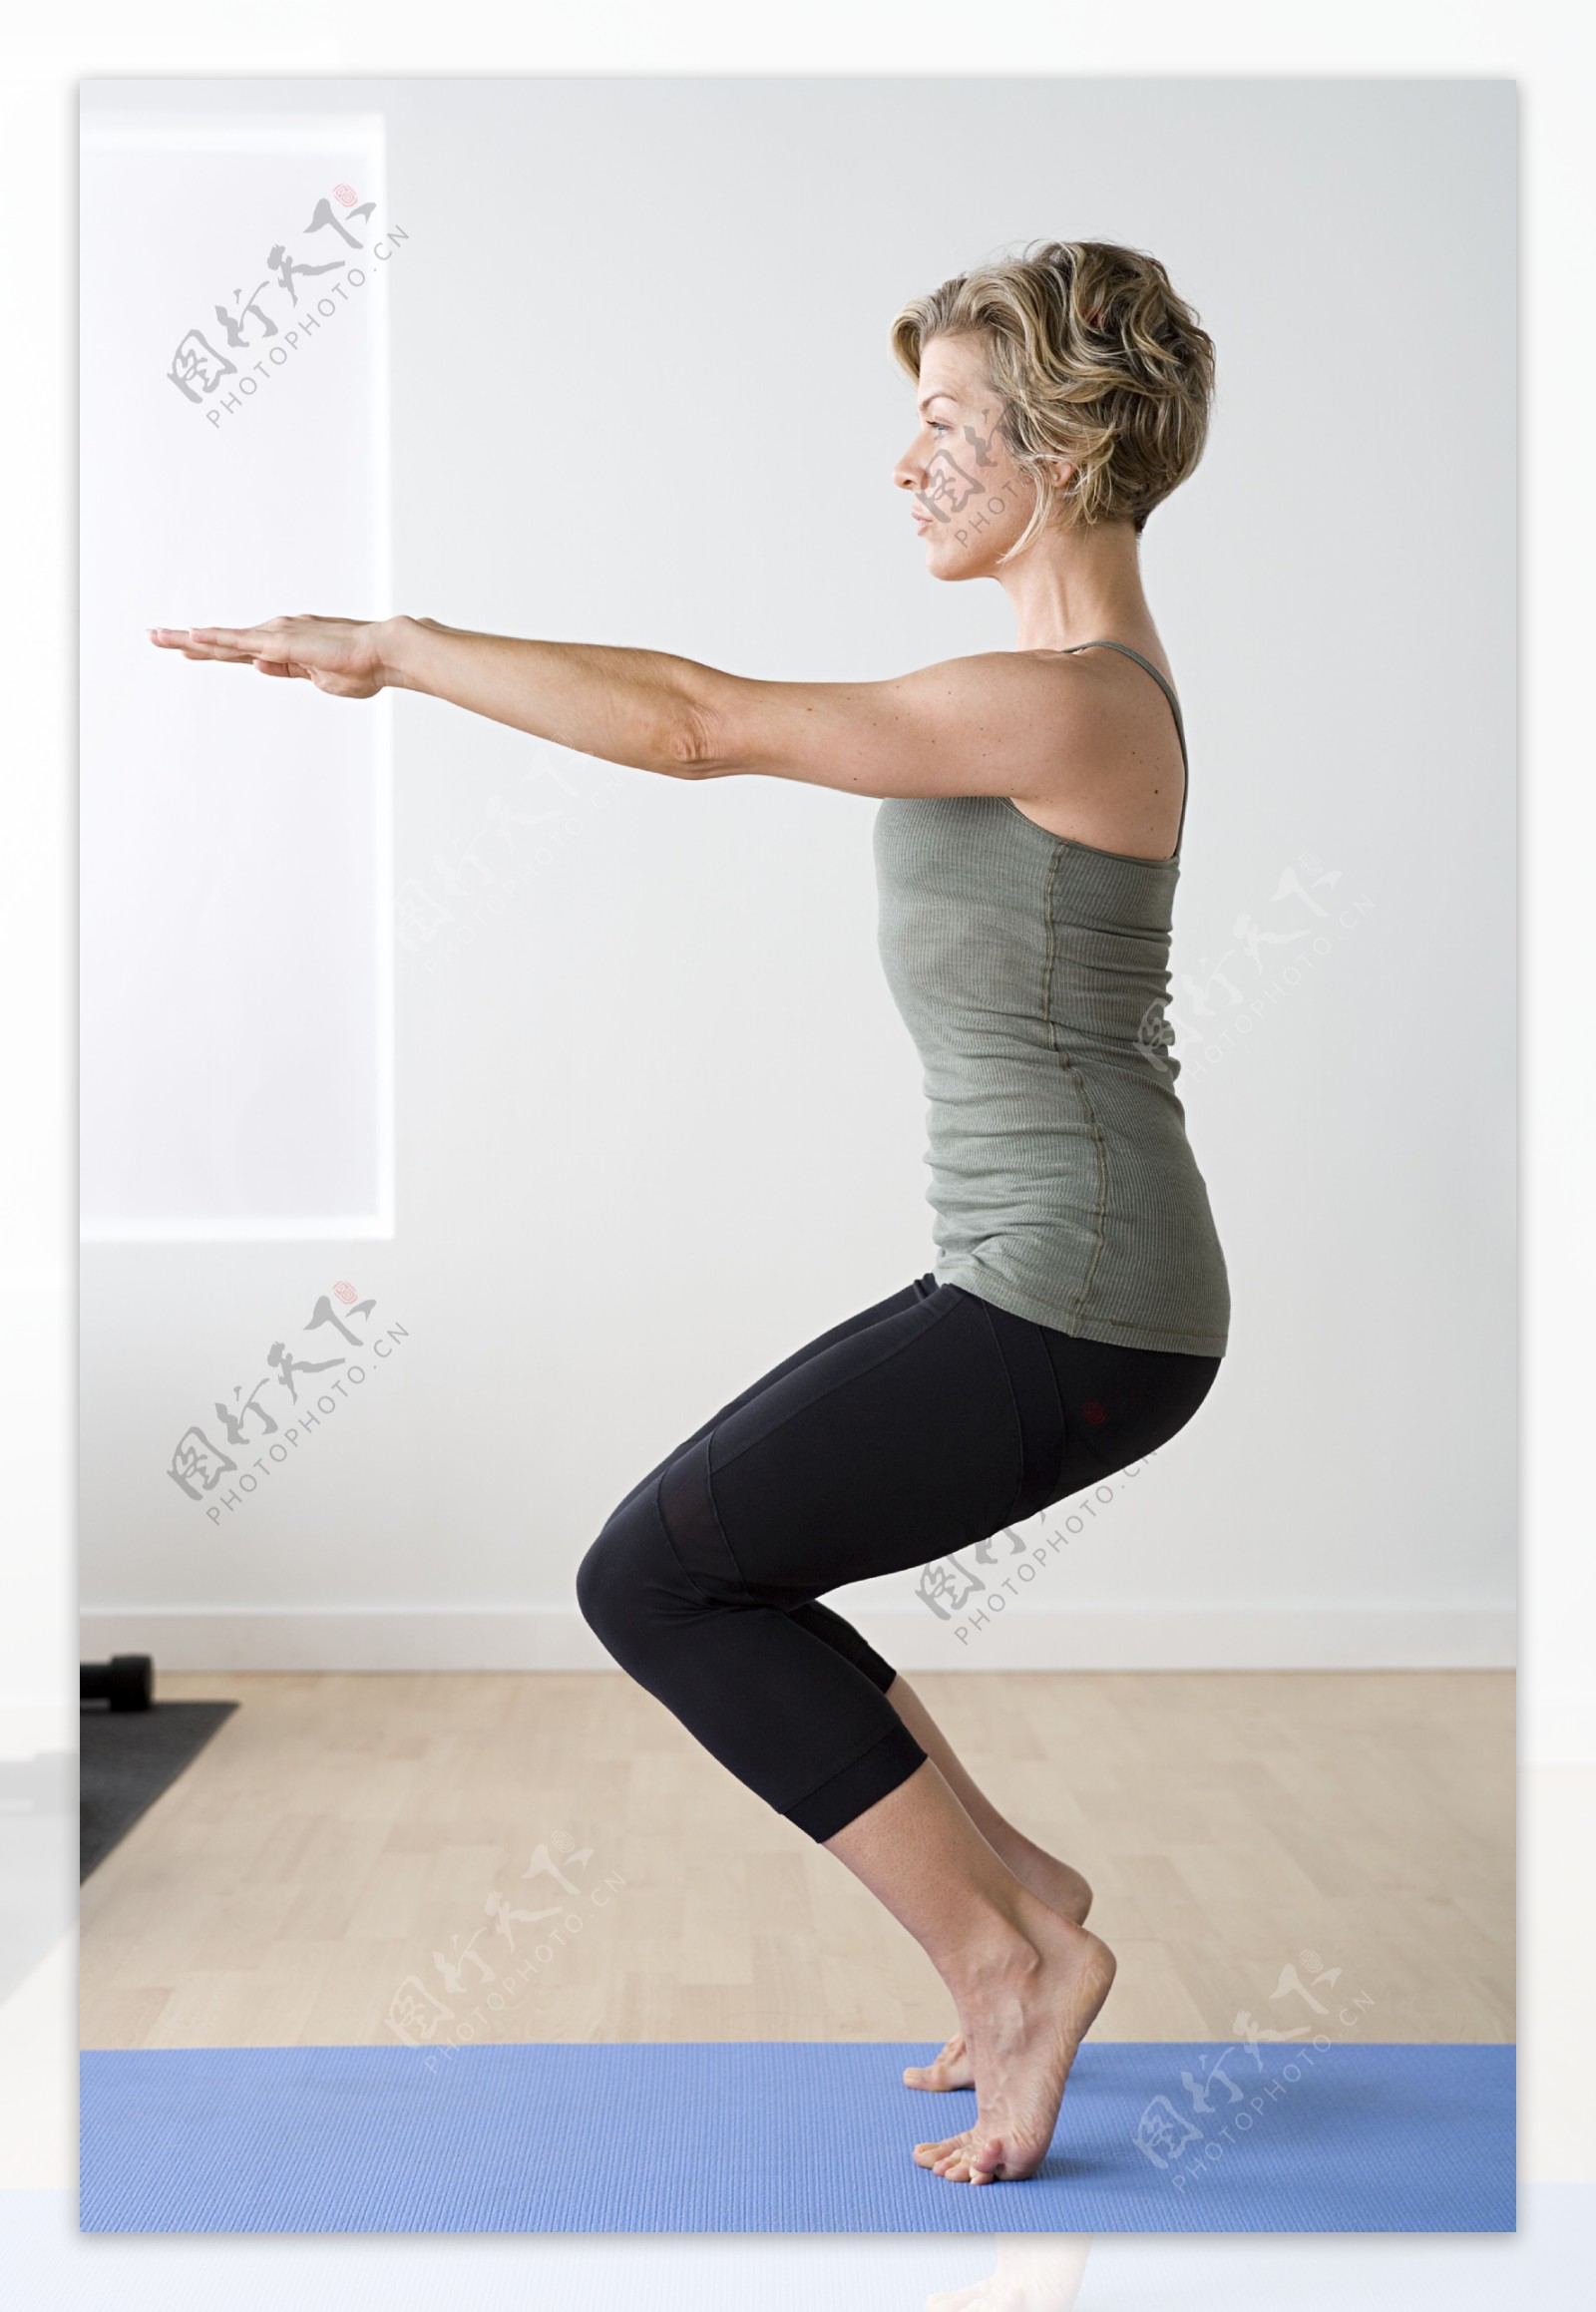 练瑜伽的女性图片